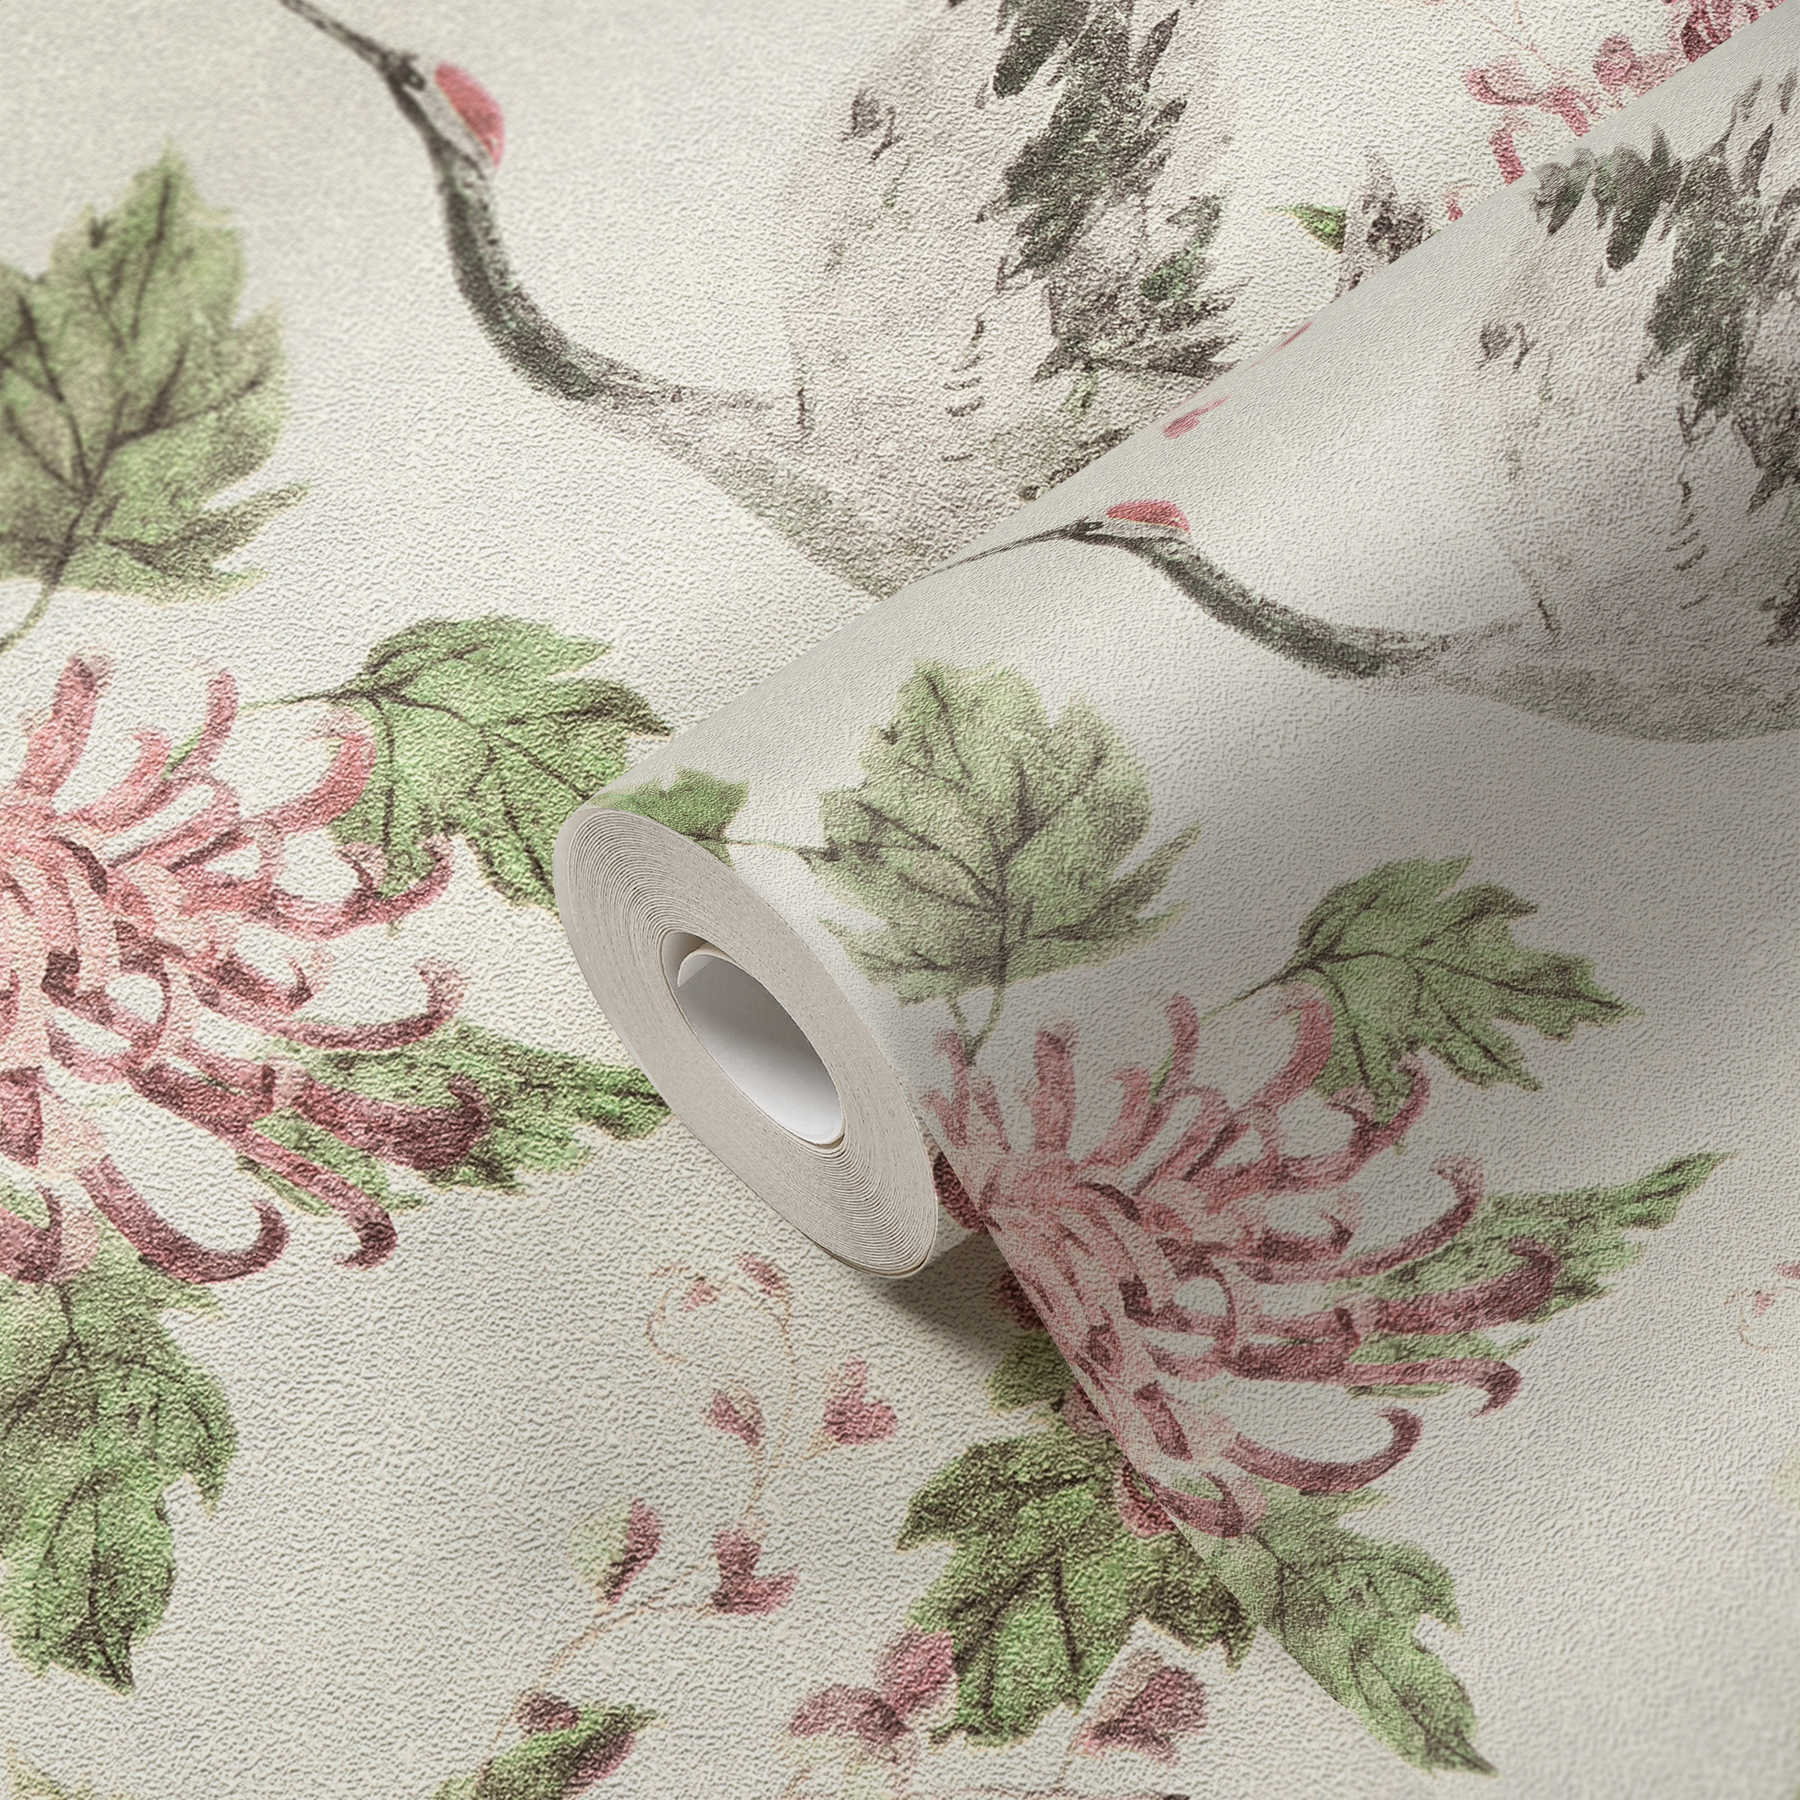             Patroonbehang met Aziatische kraanvogel en bloemmotief - roze, groen, wit
        